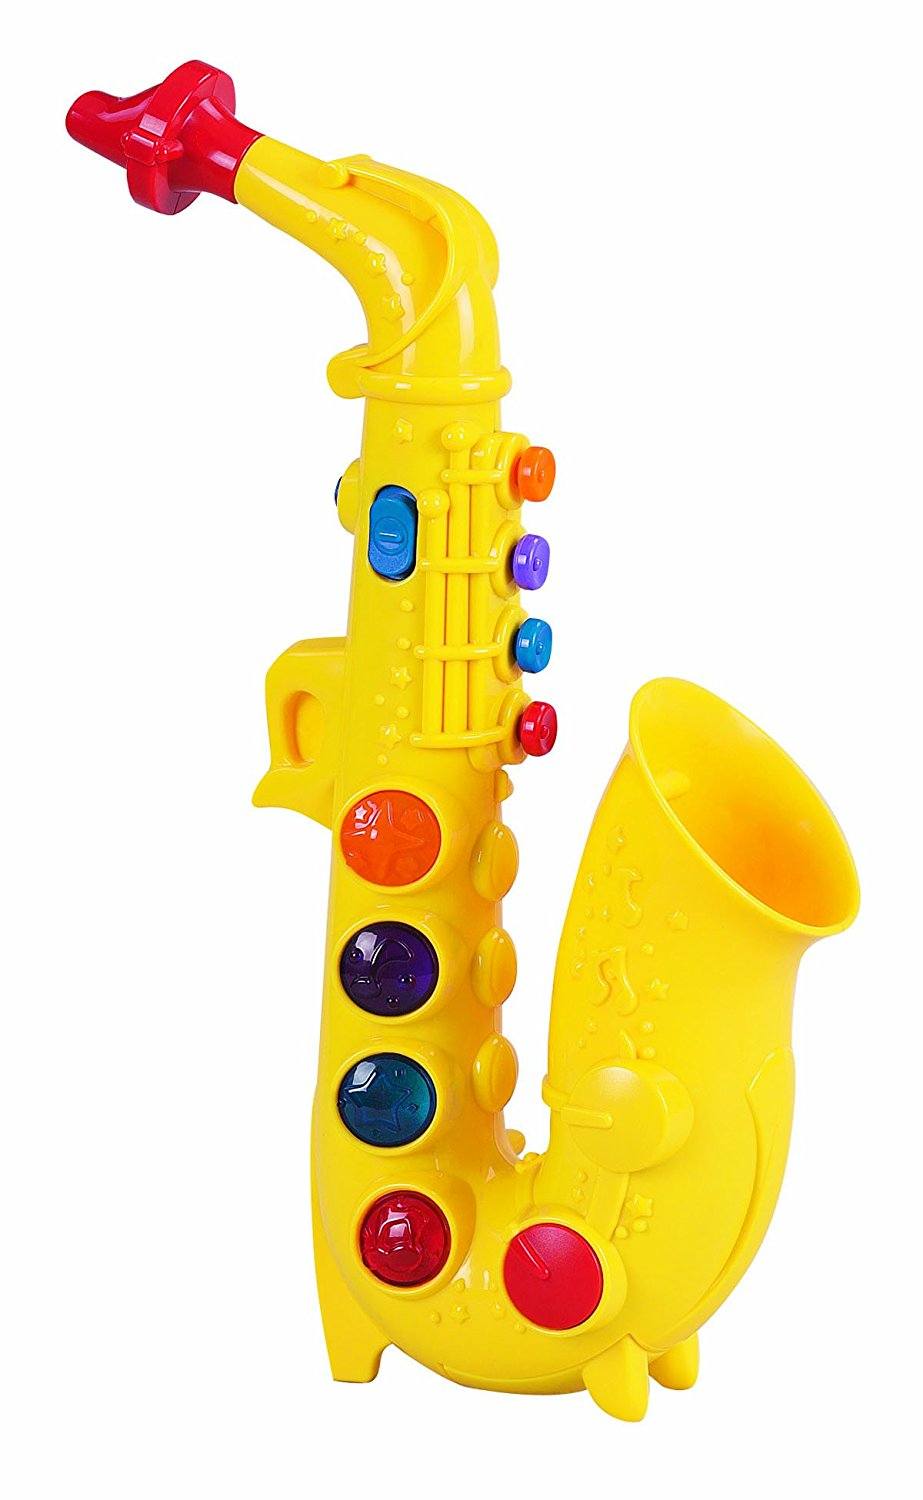 children's saxophone toy